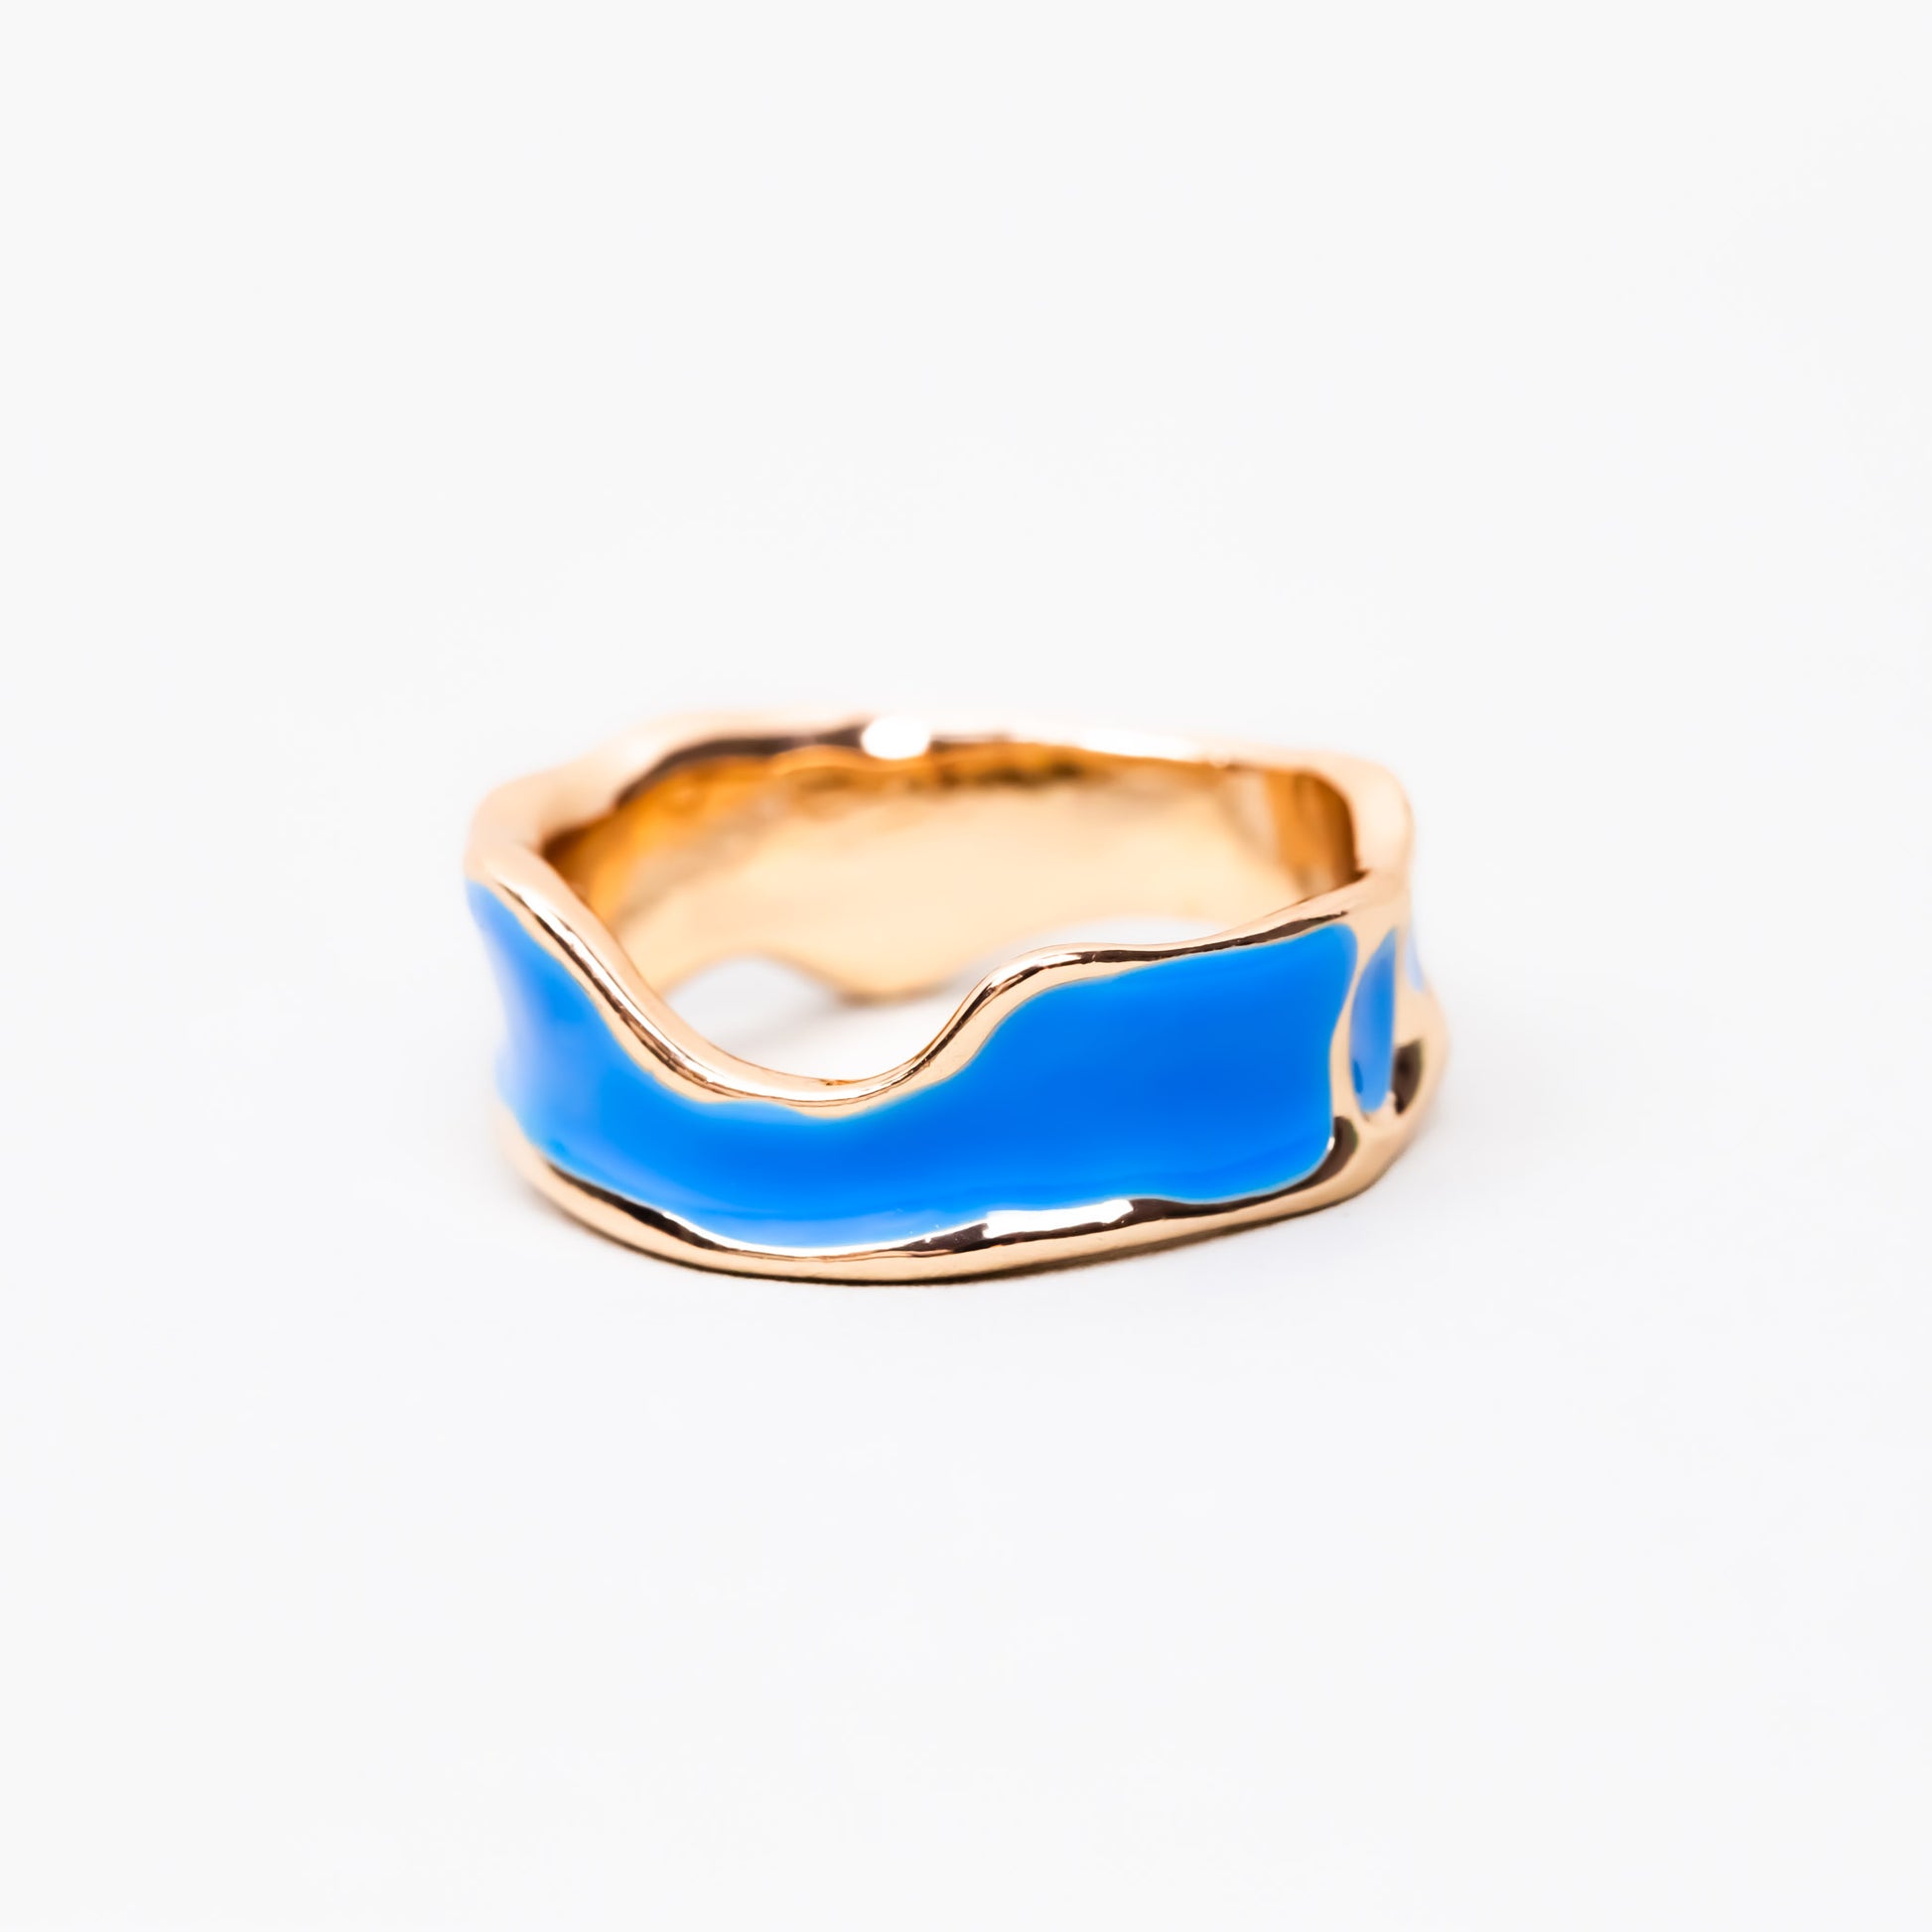 Inel auriu cu formă abstractă și accent color - Albastru